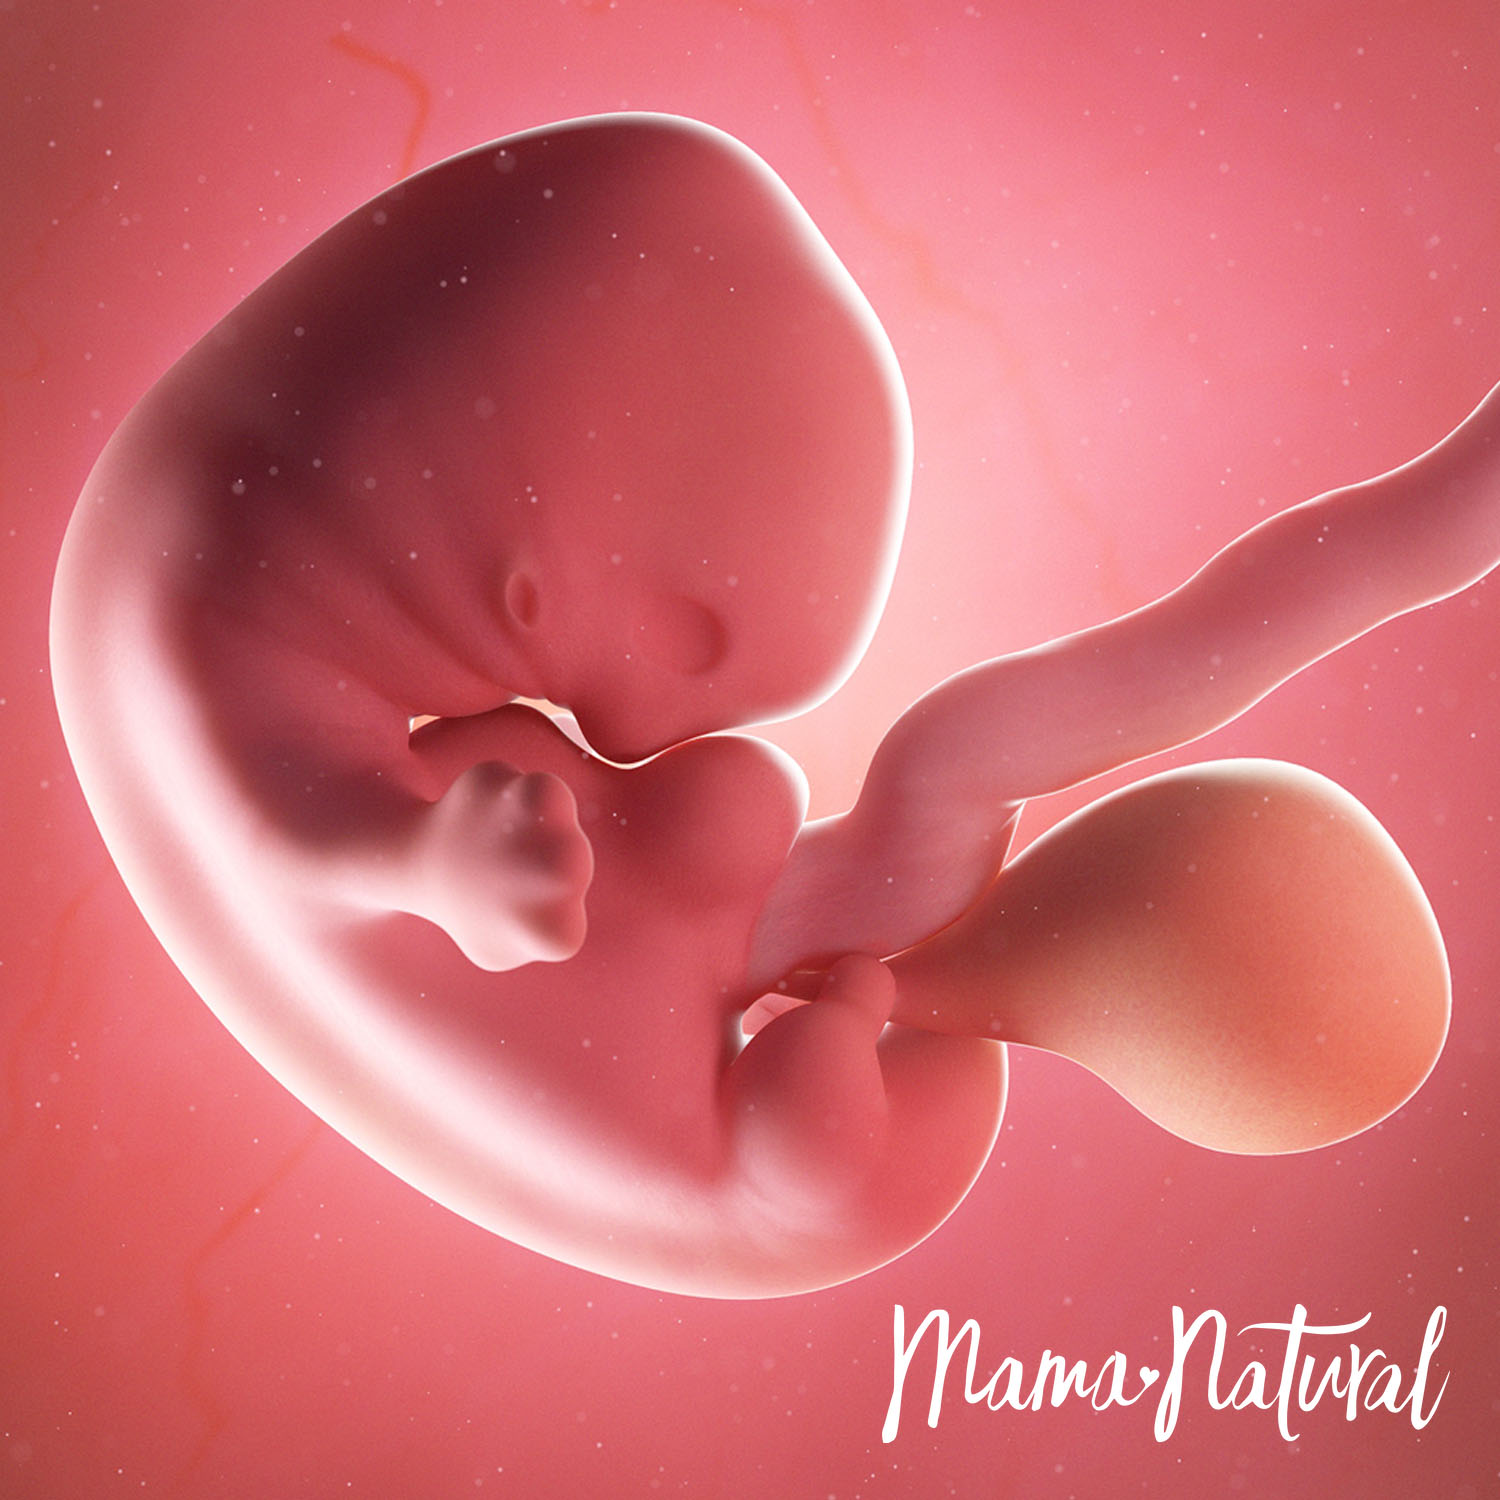 Baby at 7 Weeks Pregnant - Pregnancy Week By Week by Mama Natural